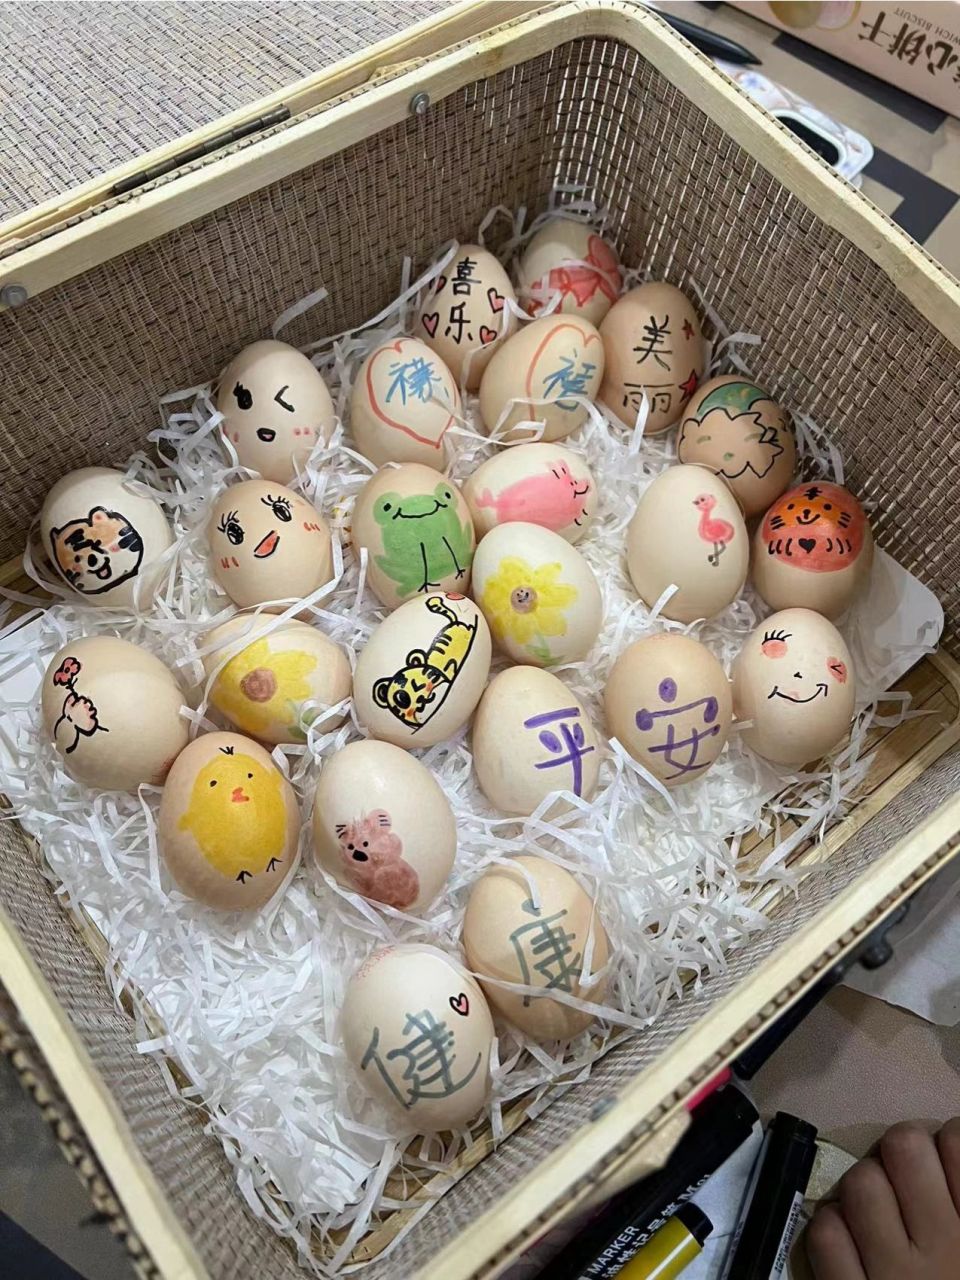 礼轻情意重,满满的手绘生日鸡蛋画 可可爱爱的生日鸡蛋